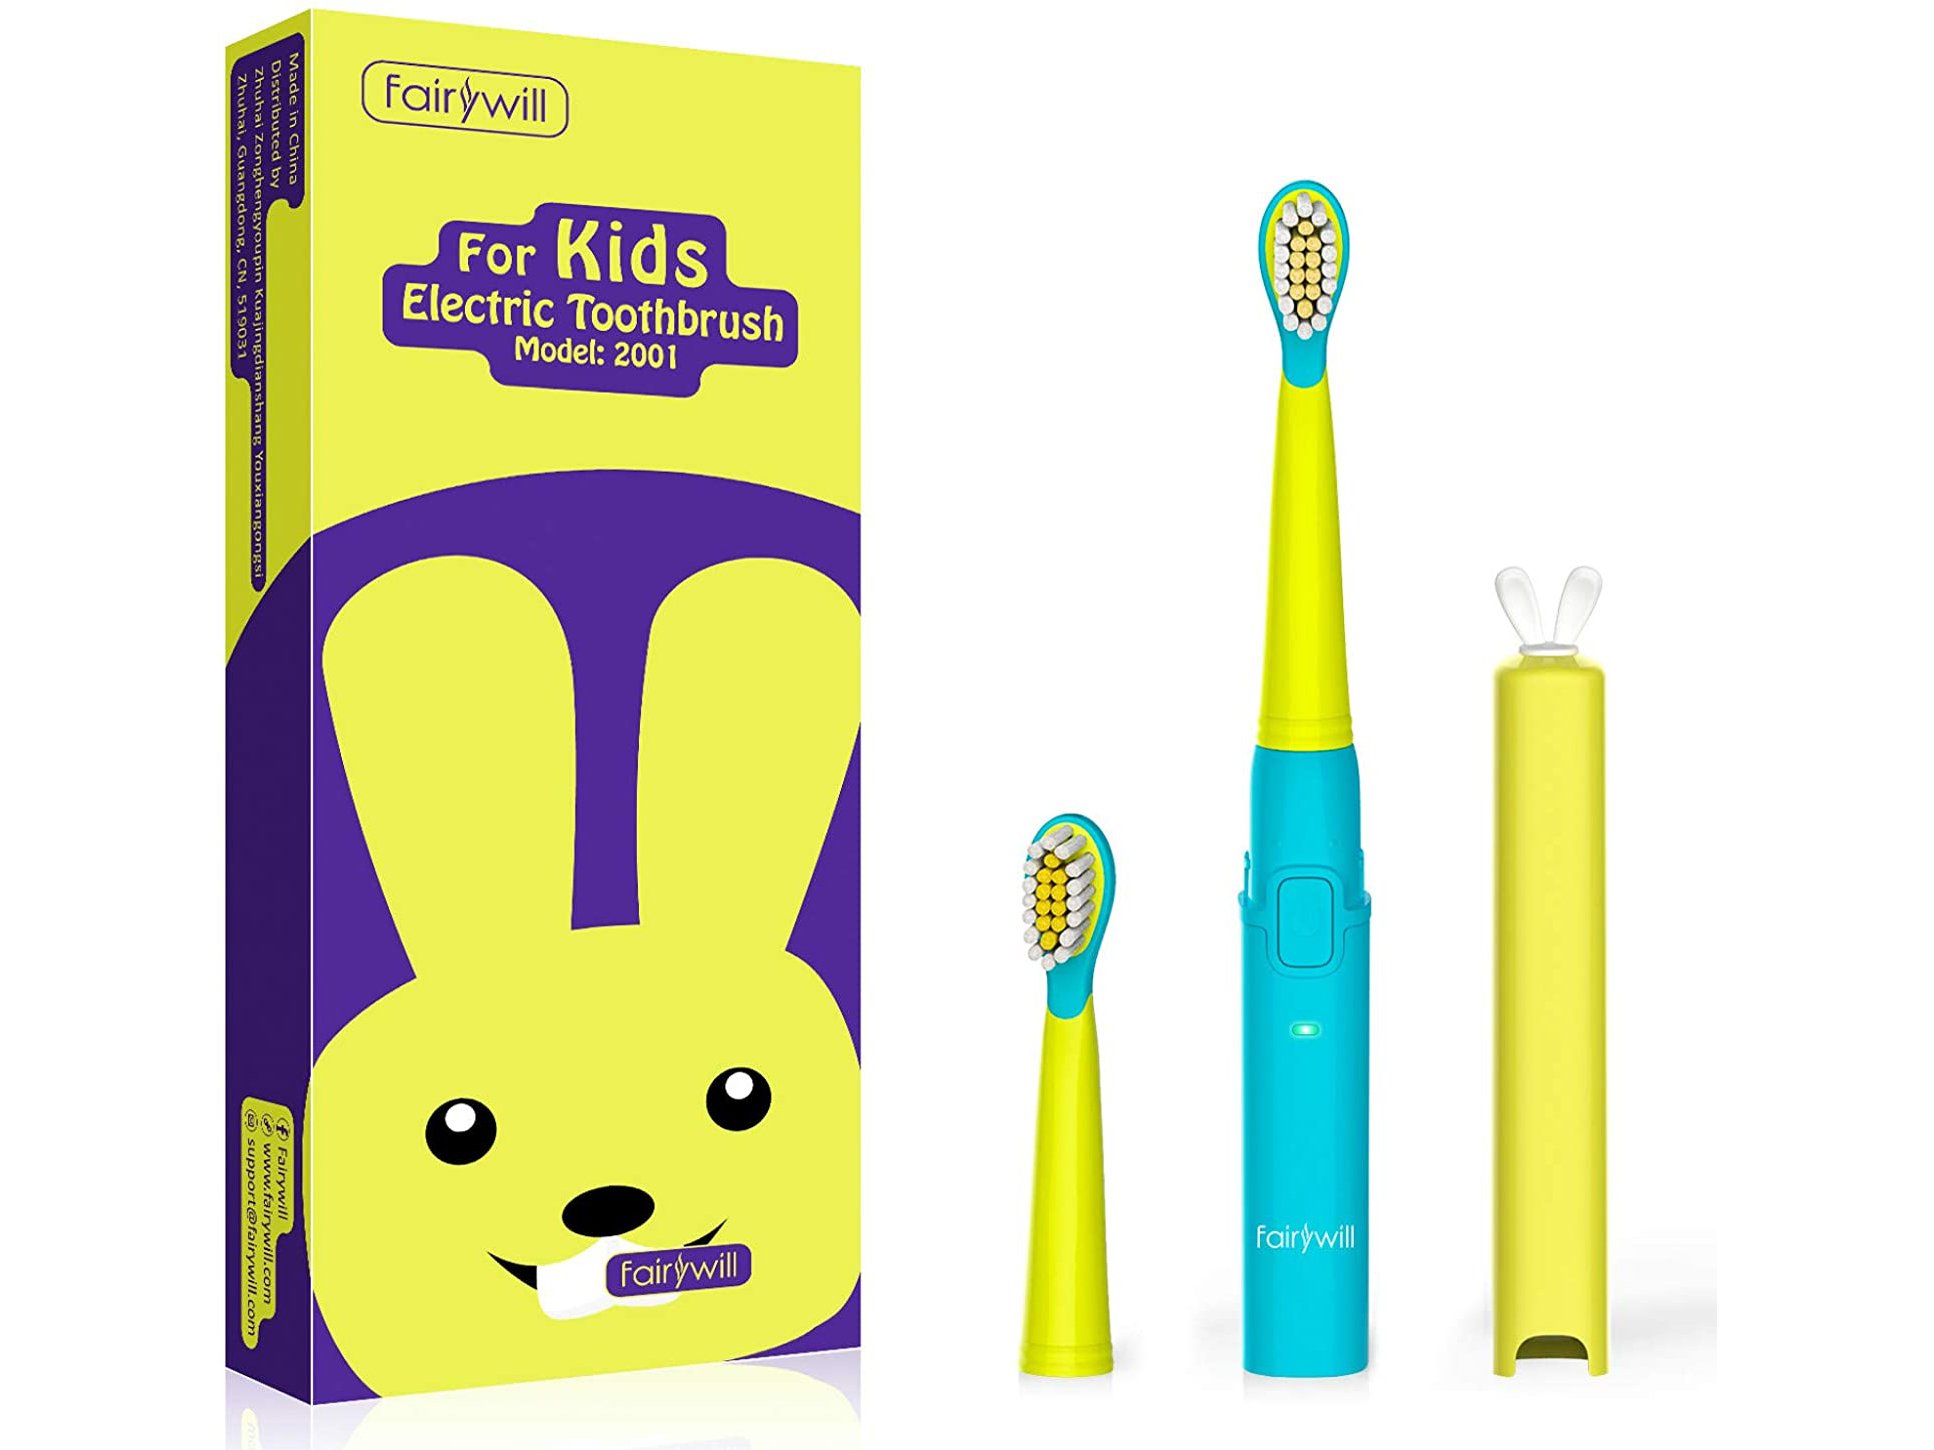 elektrische Zahnbürste Kinder Test Fairywill